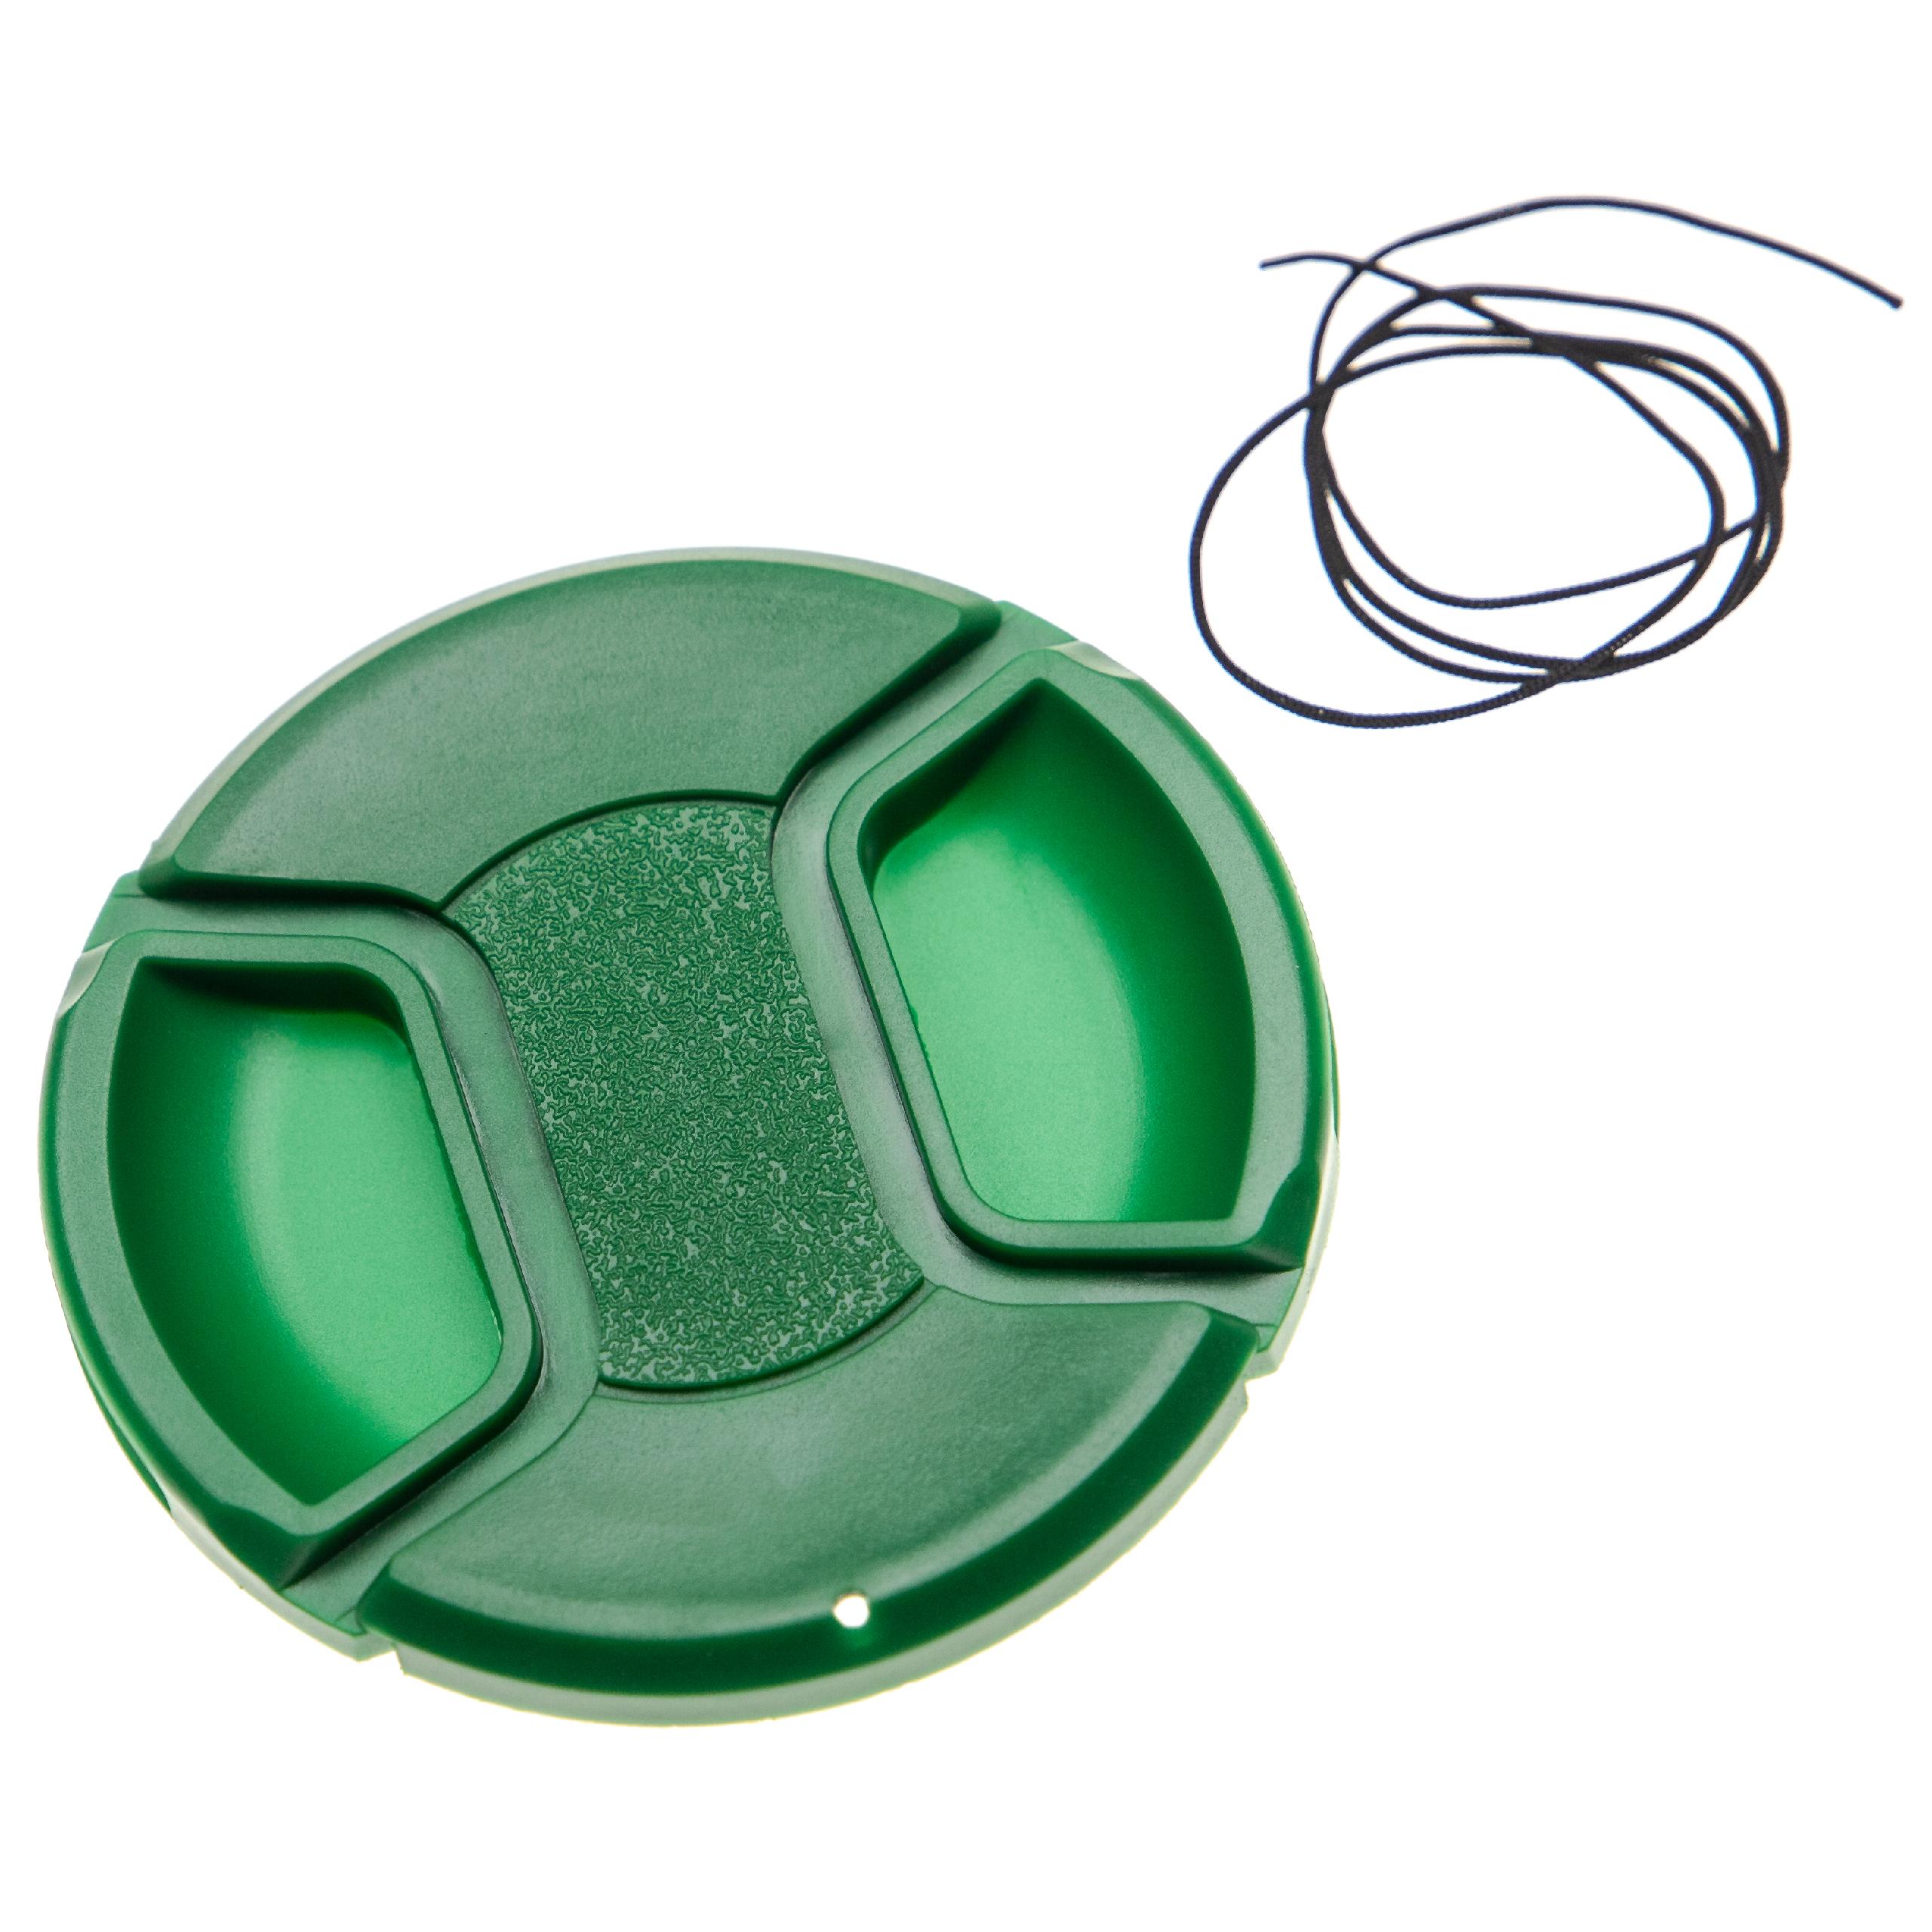 Tapa objetivo 72mm para cámara - Con mango interior, plástico verde